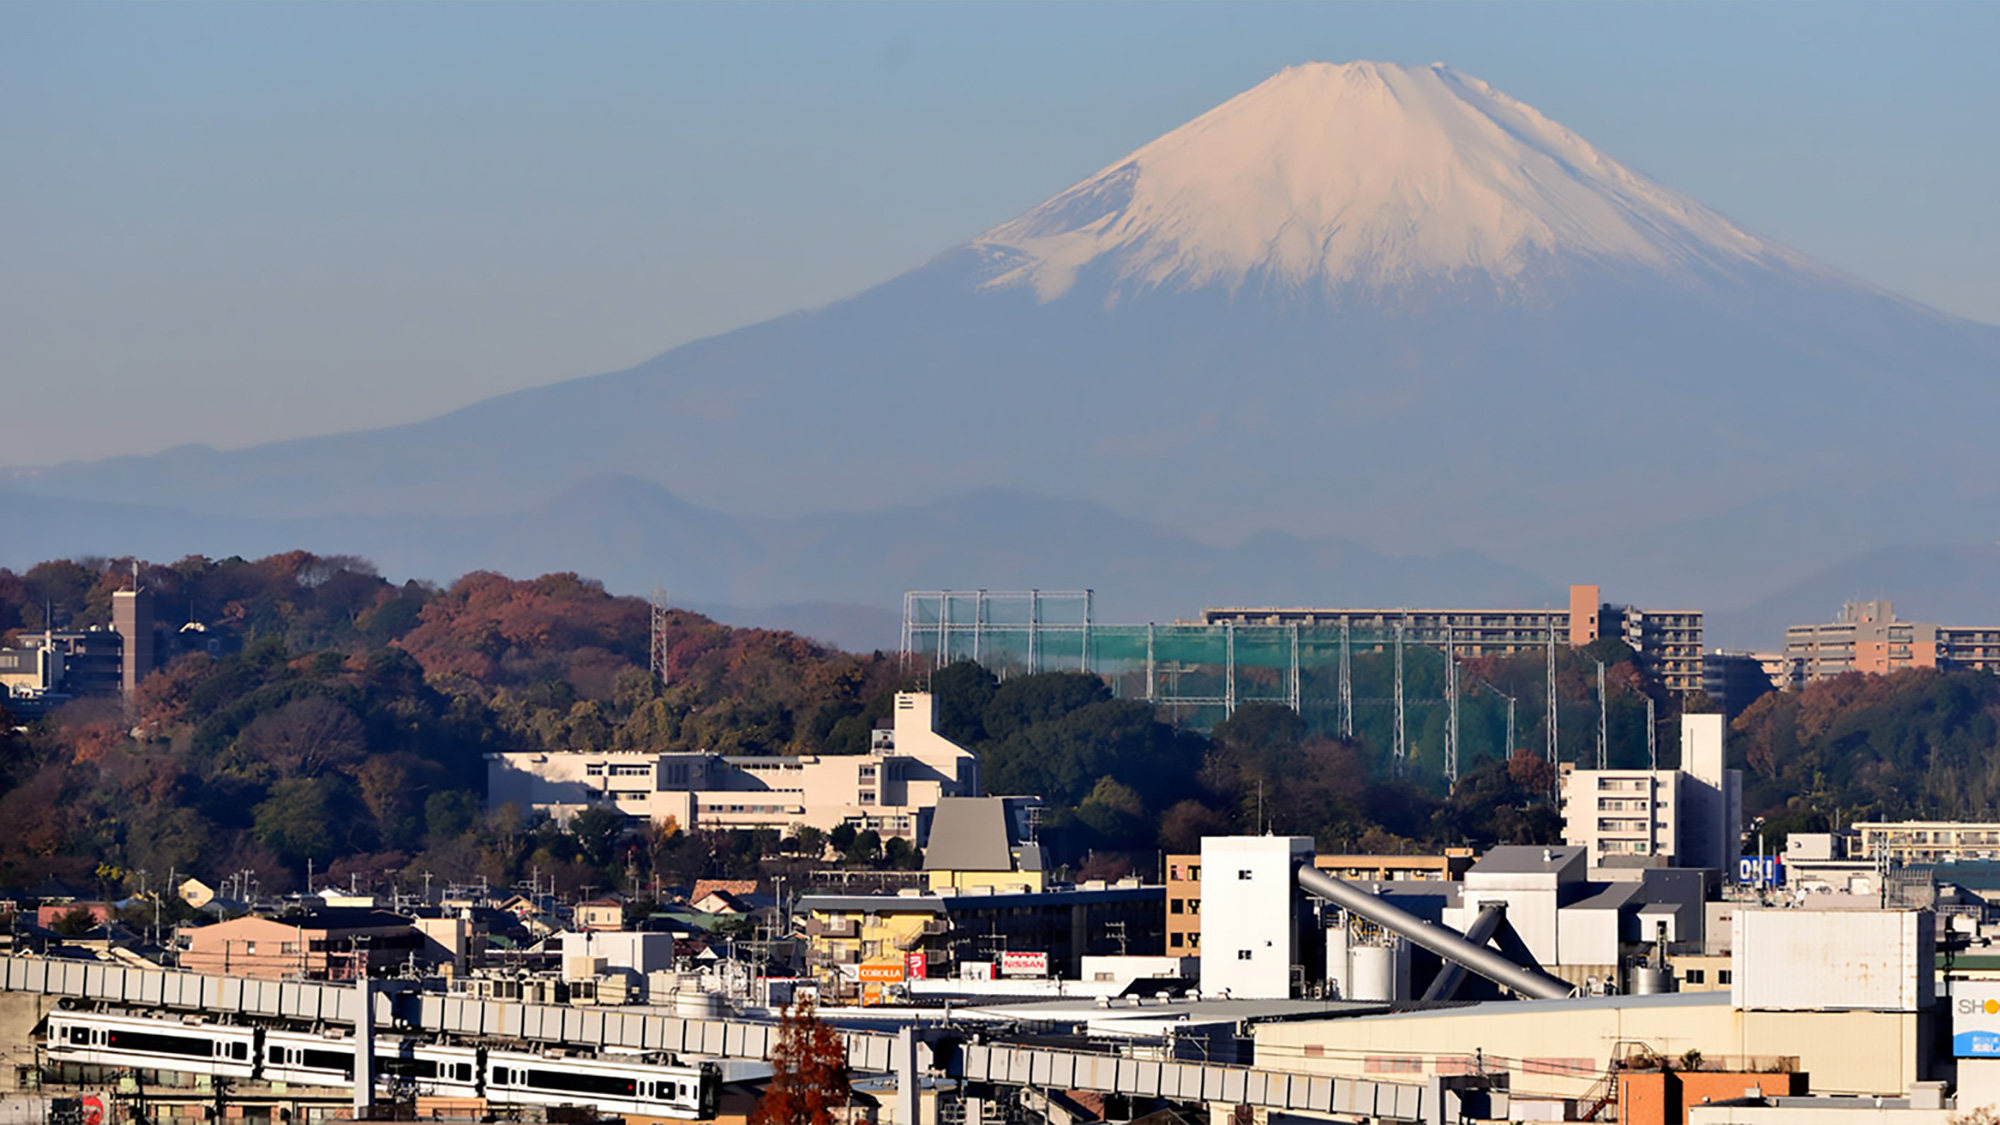 Shonan Monorail & Mount Fuji